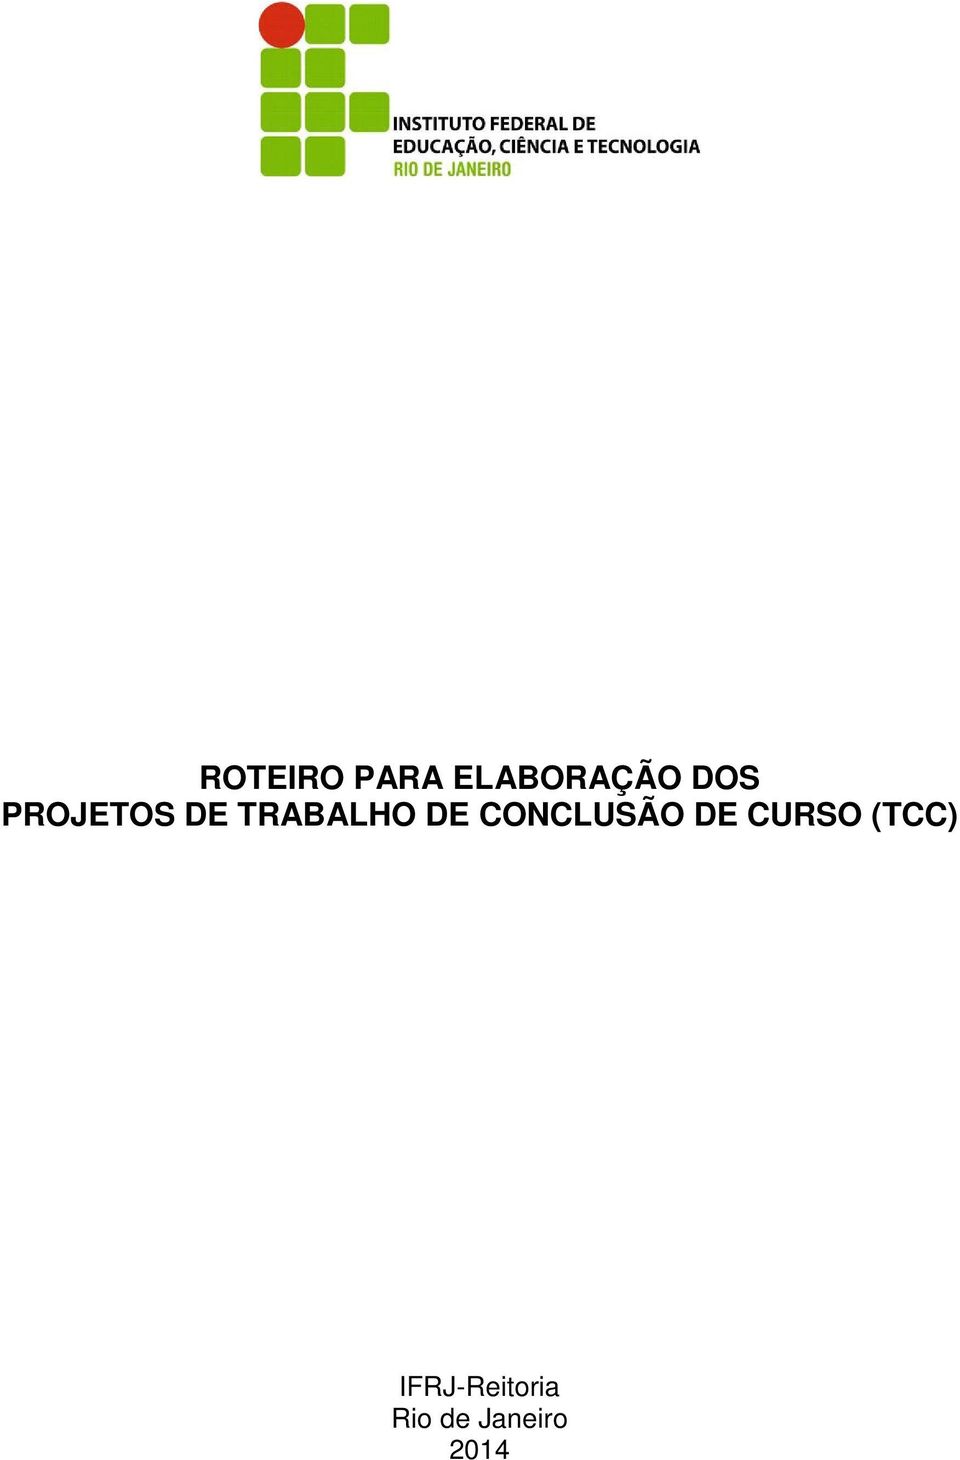 CONCLUSÃO DE CURSO (TCC)